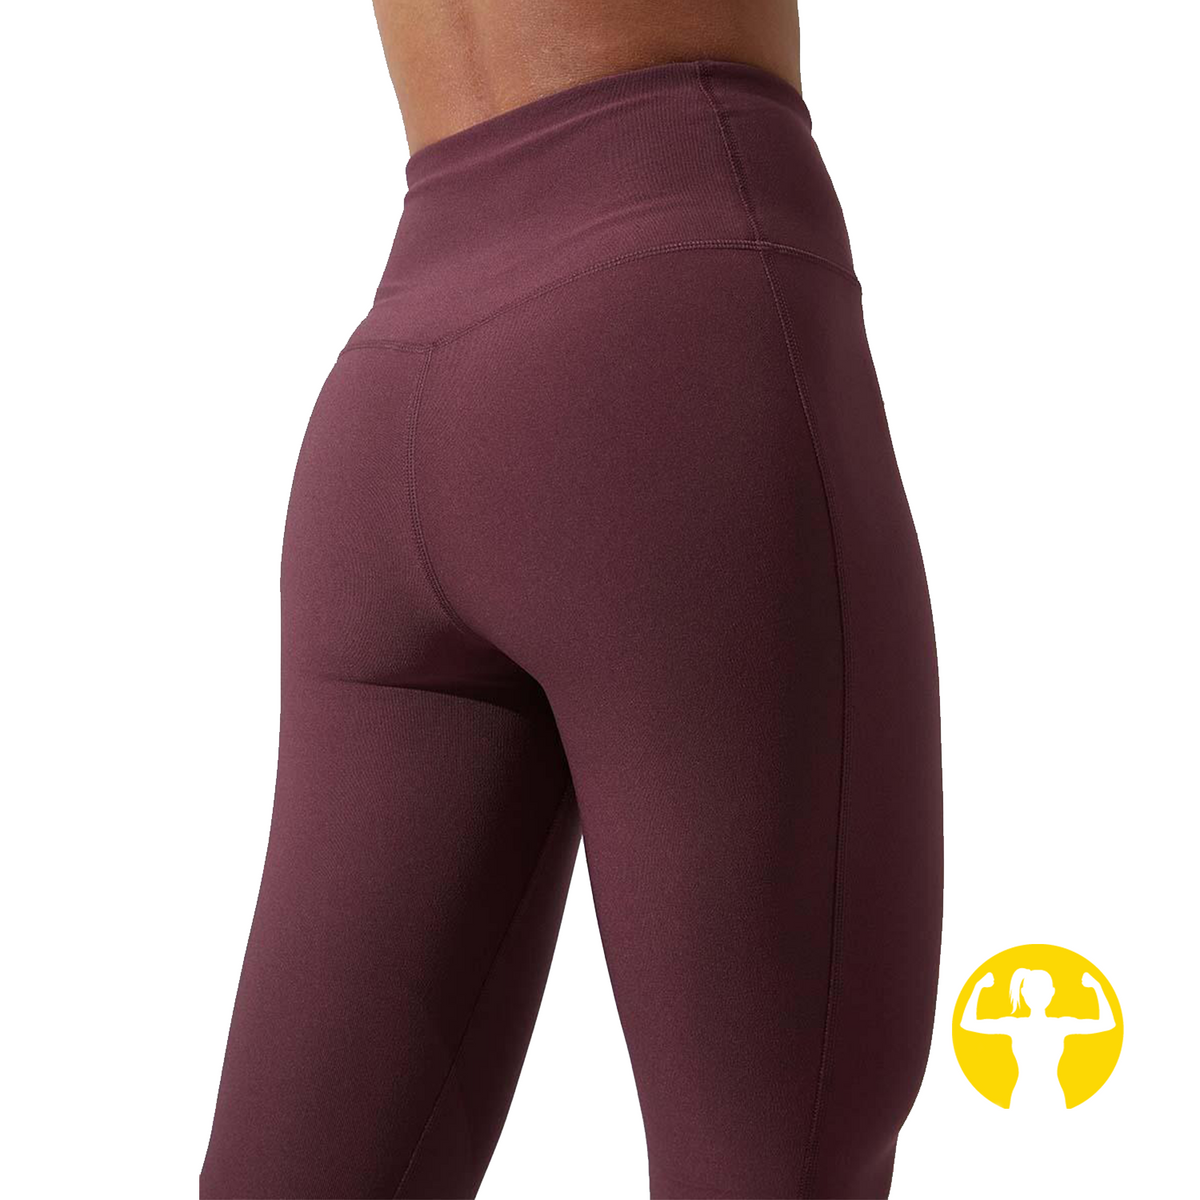 Pockets For Women - Sweaty Betty Rapid Run Leggings, Multi Colored, Women's